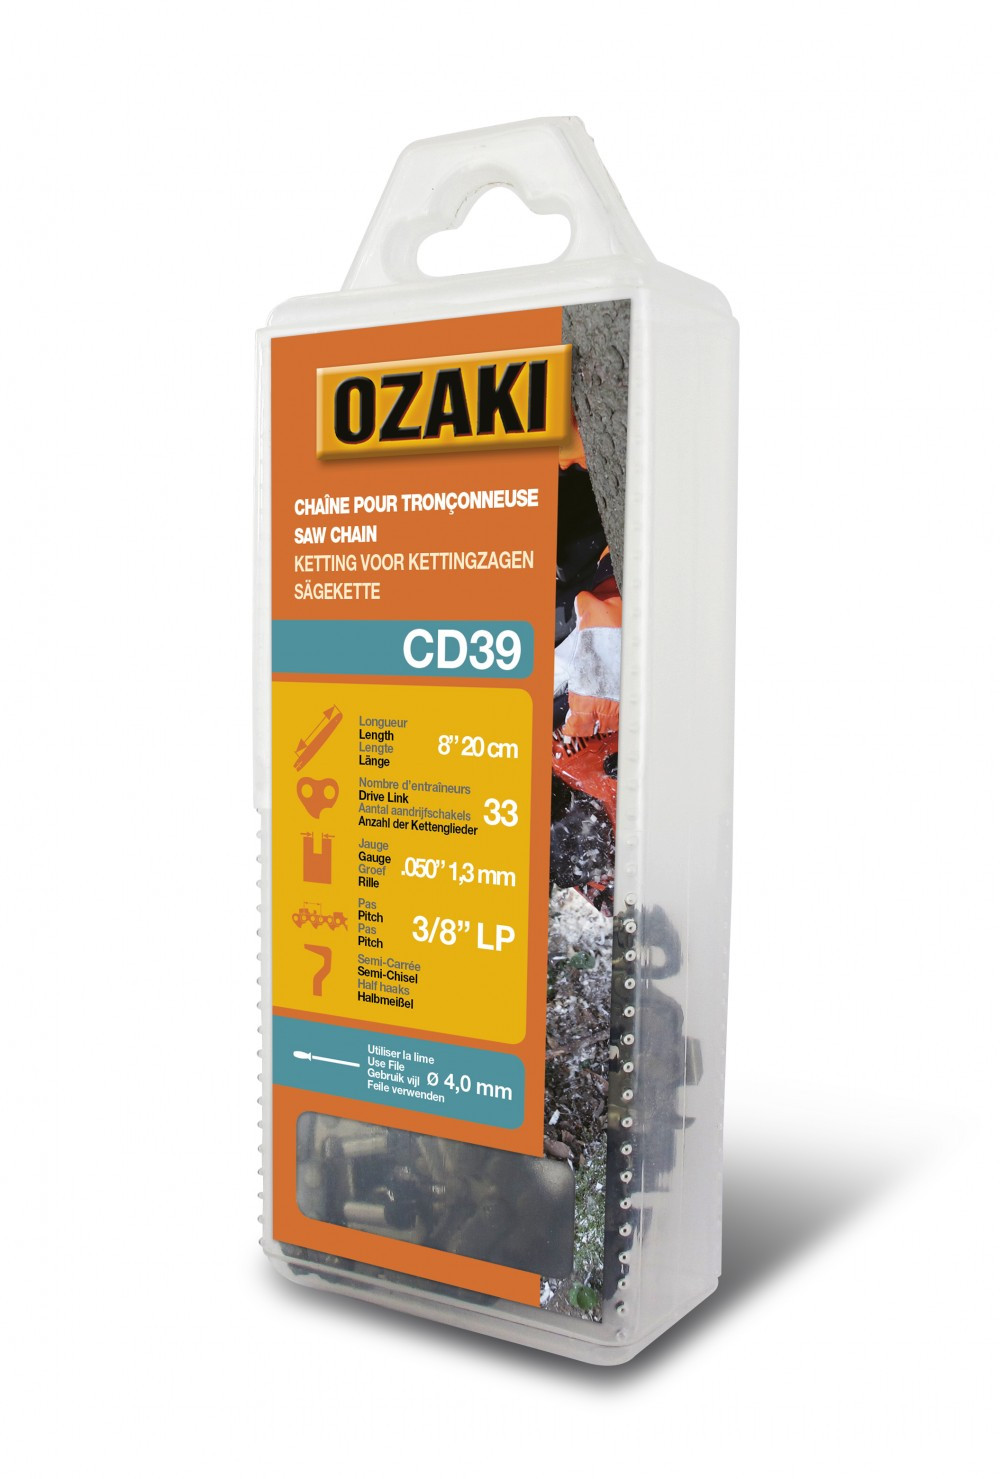 Chaîne de tronçonneuse OZAKI semi carrée: .3/8" LP .050 (1,3mm) 33 entraîneurs